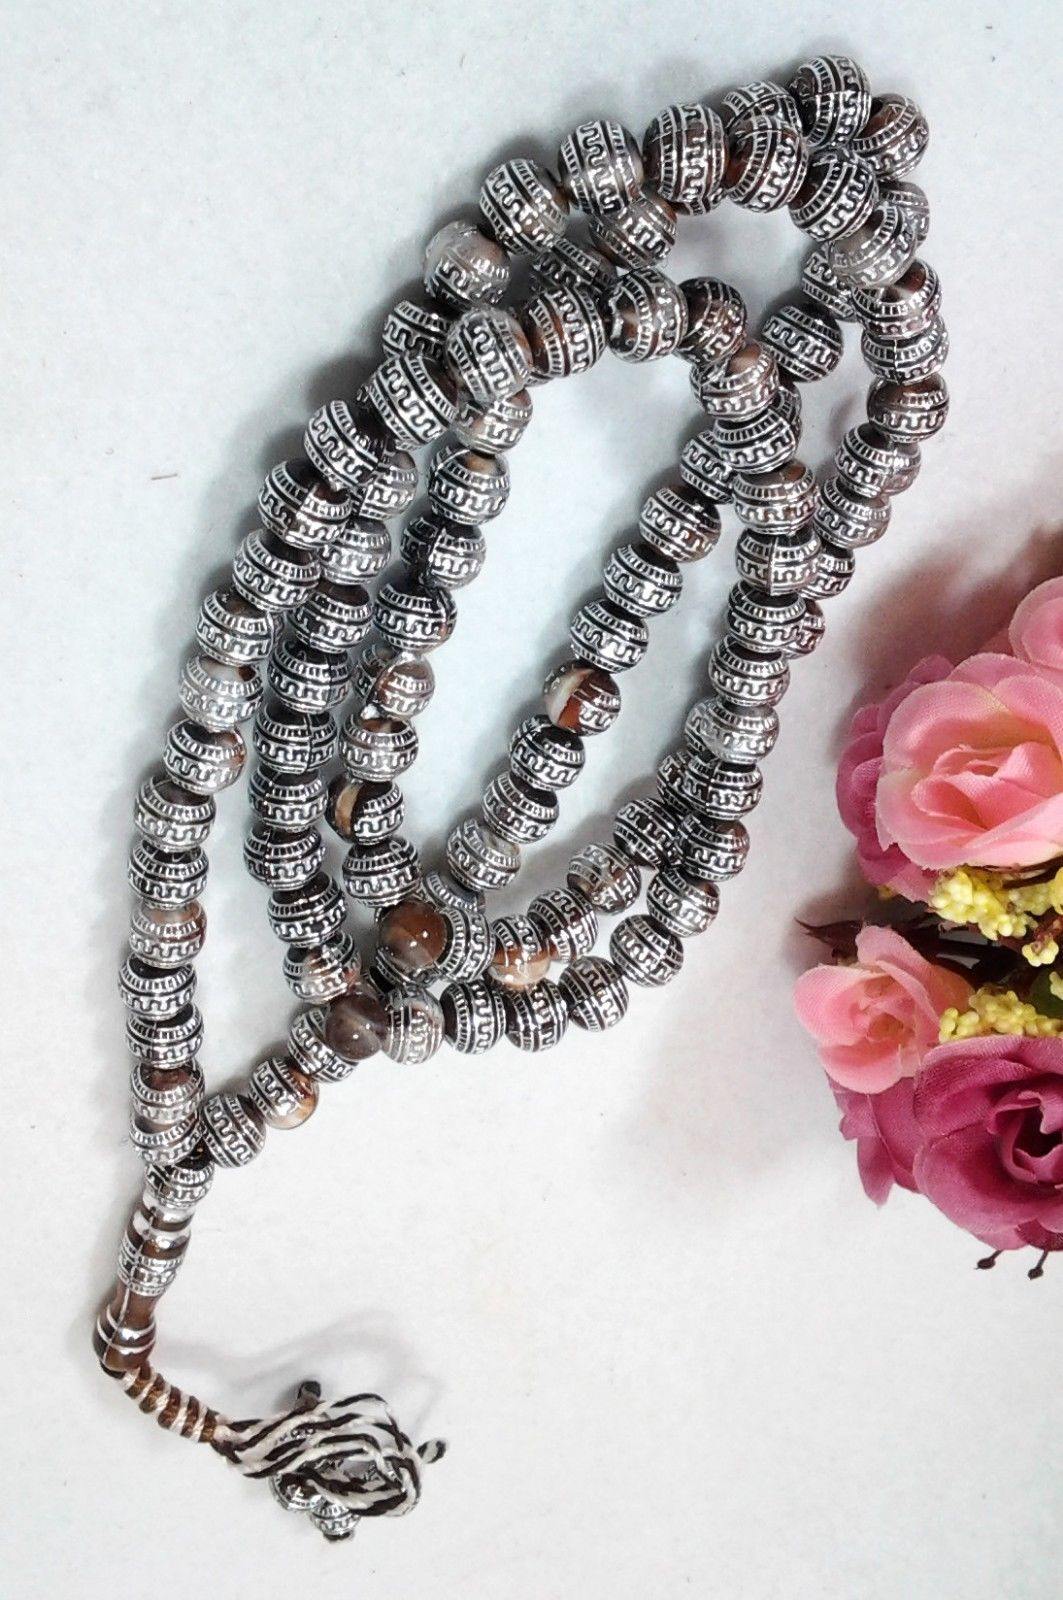 8mm Prayer Beads 99 Misbaha Tasbih Tasbeeh Islamic Salah Masbaha Thikr Allah